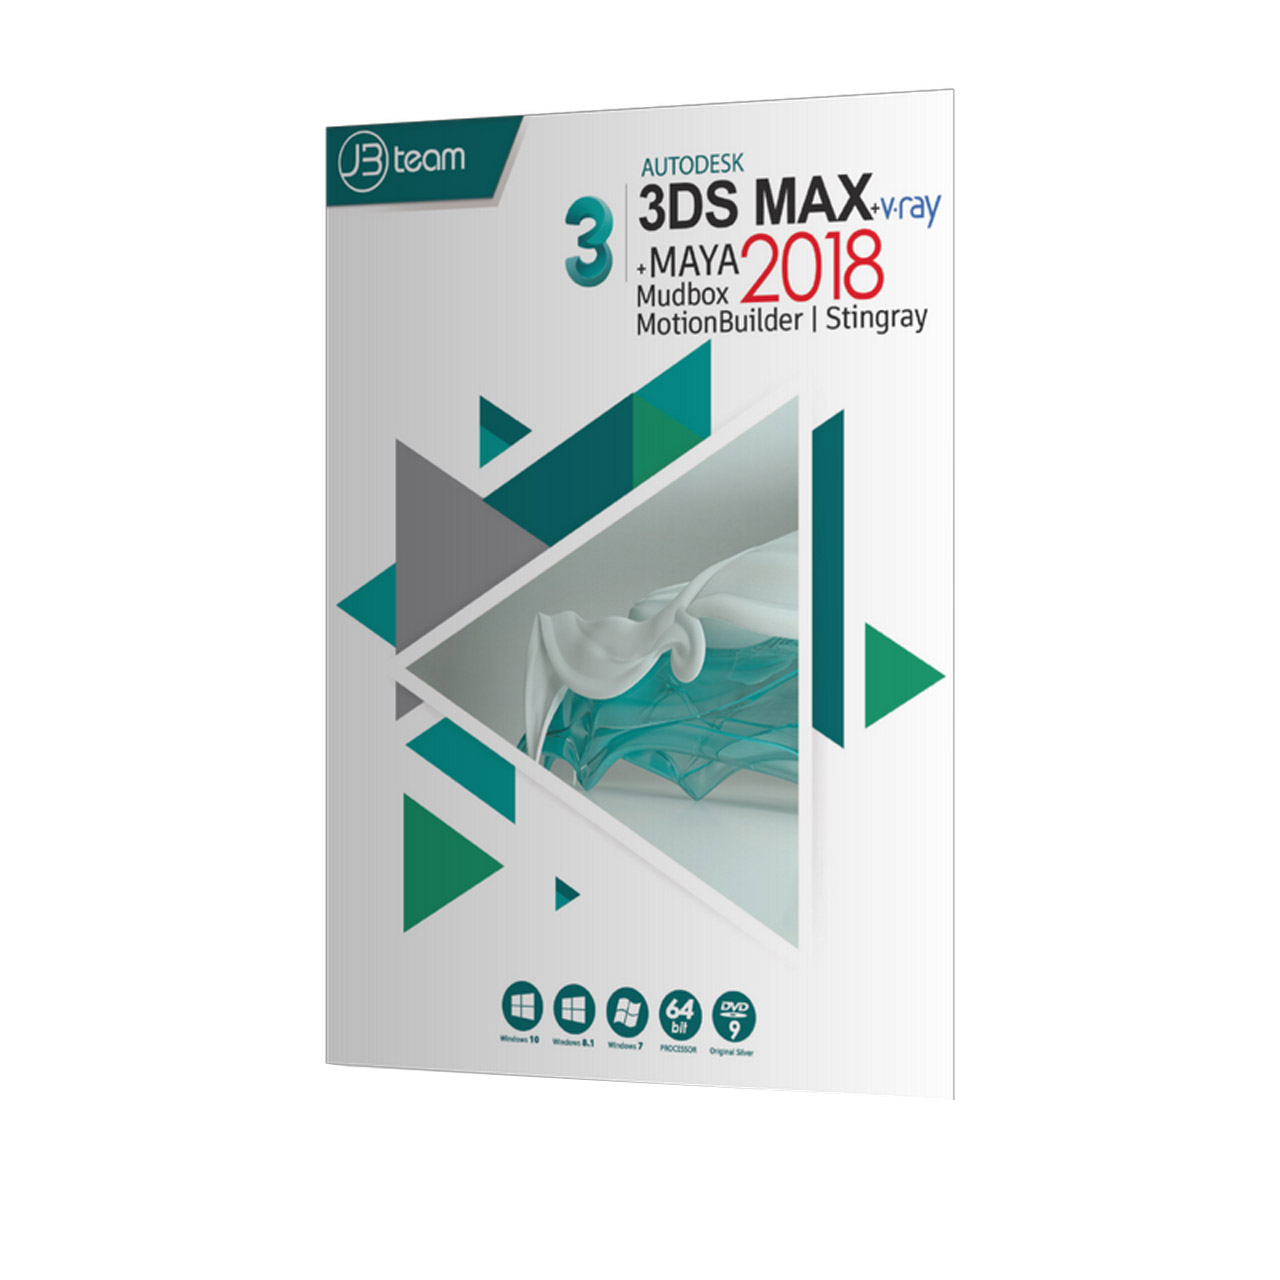 نرم افزار 3DS MAX + V.ray + MAYA 2018 نشر جی بی تیم